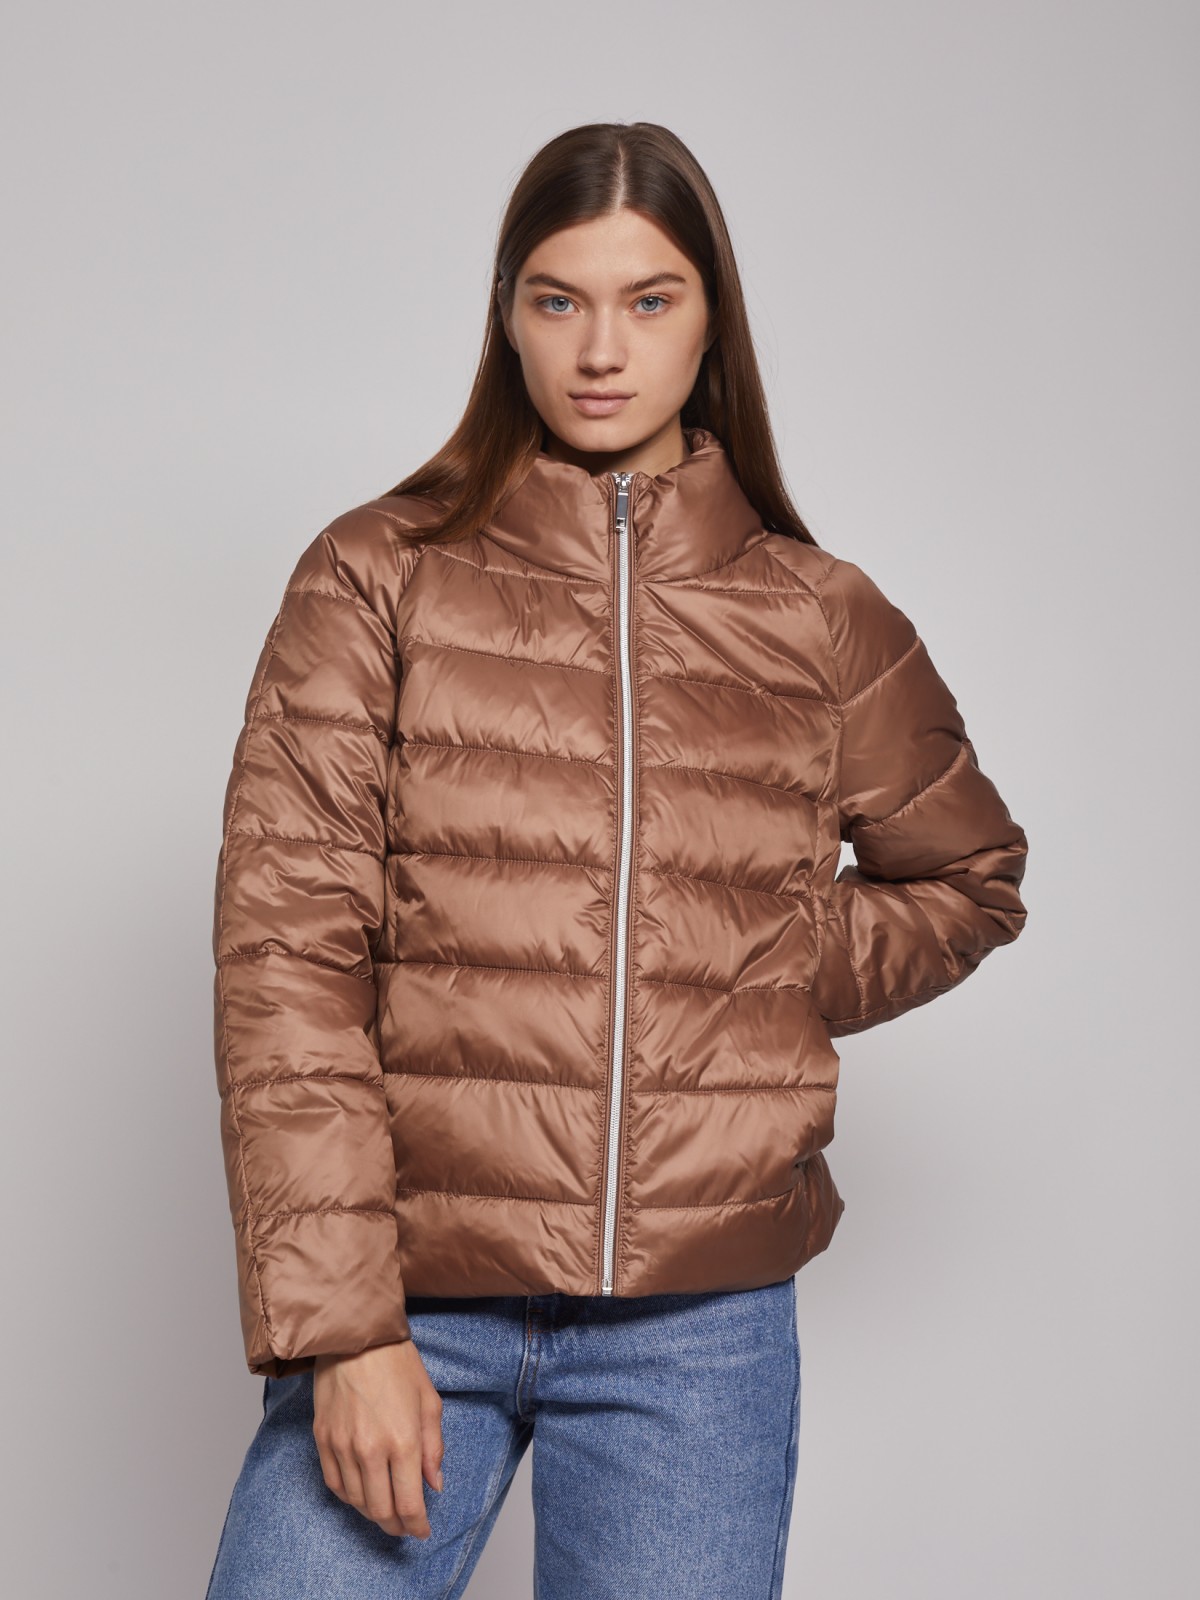 Лёгкая куртка с воротником-стойкой zolla 022335102204, цвет коричневый, размер XS - фото 4